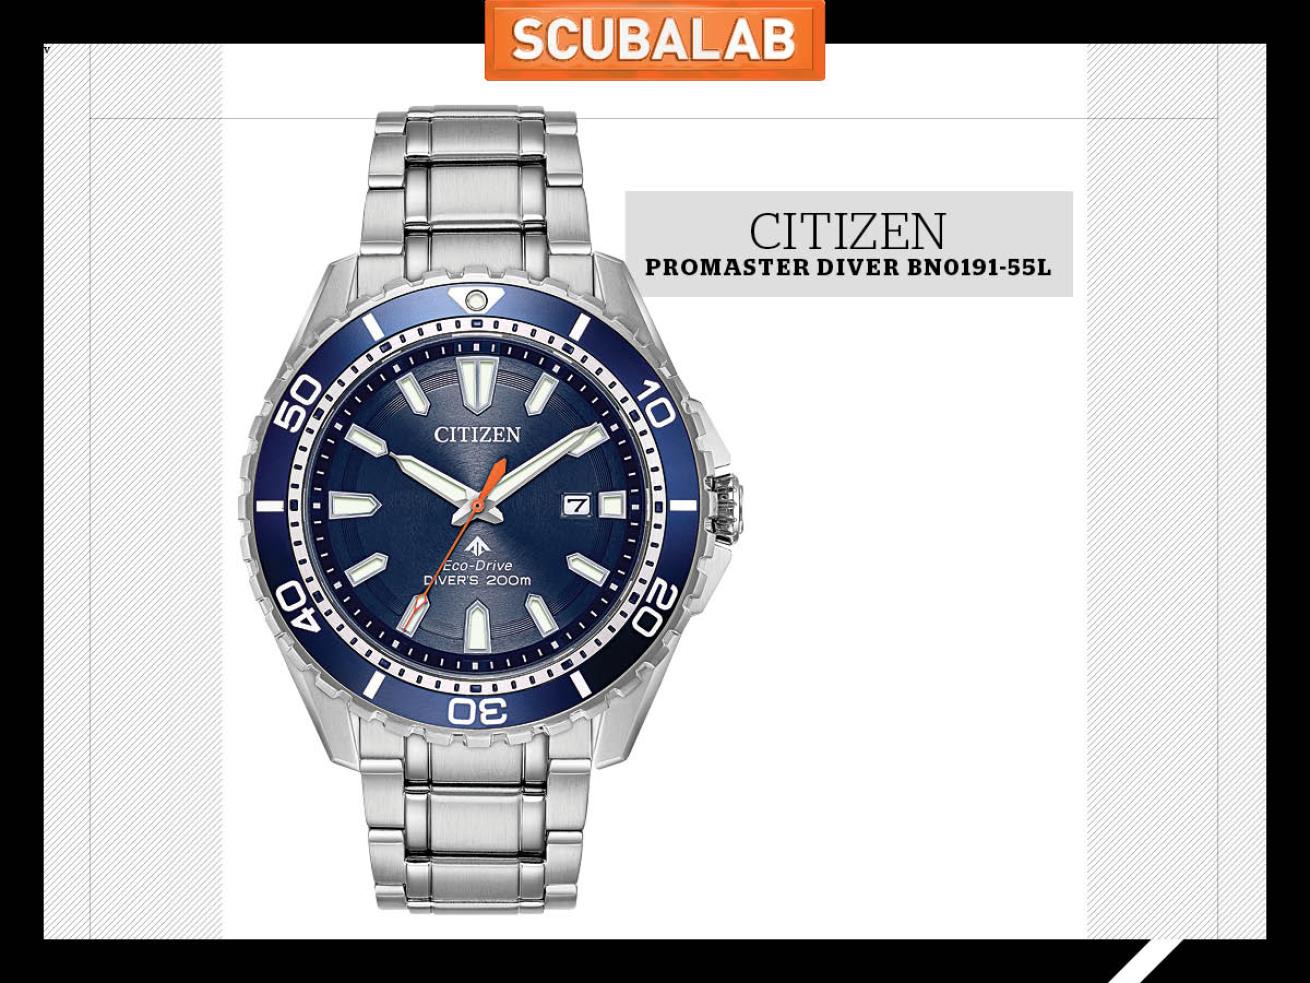 Citizen Promaster Diver BN0191-55L dive watch